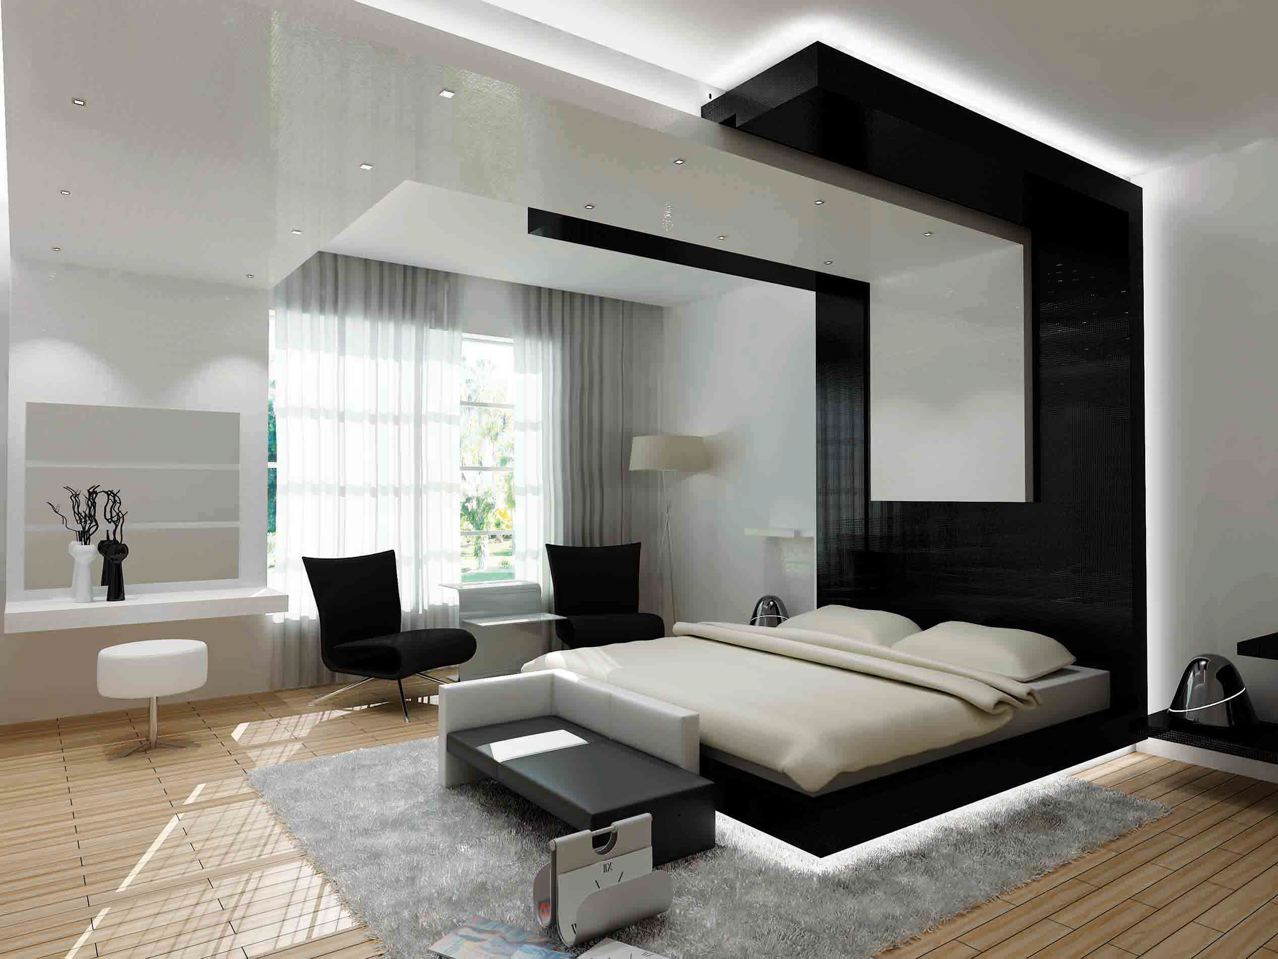 Способ выделить прикроватную зону и визуально уменьшить высоту потолка